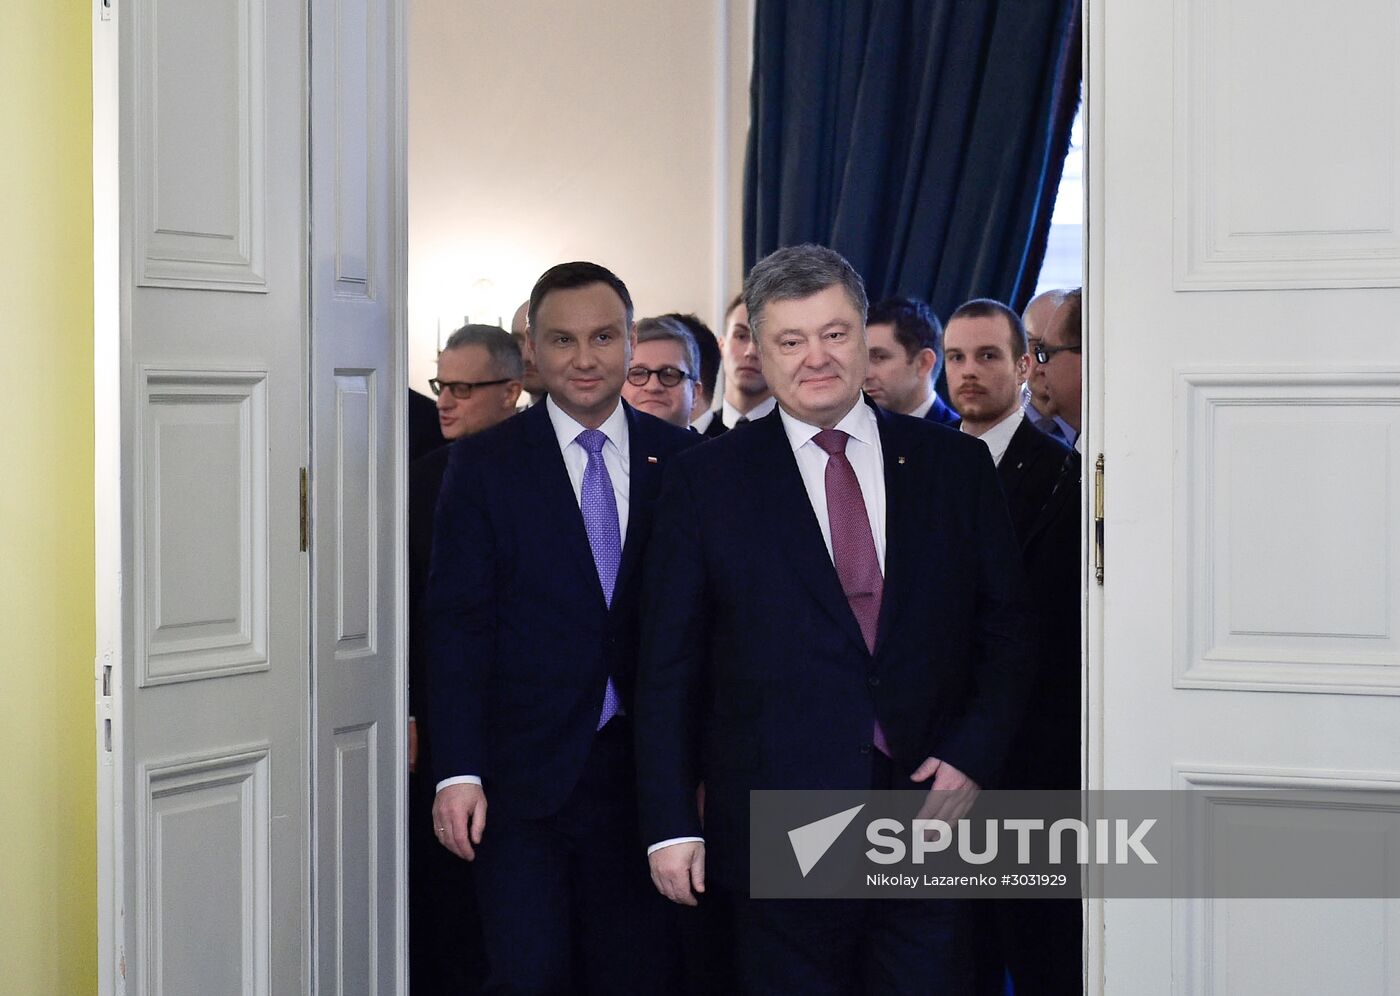 Ukraine's, Poland's presidents Poroshenko and Duda meet in Munich